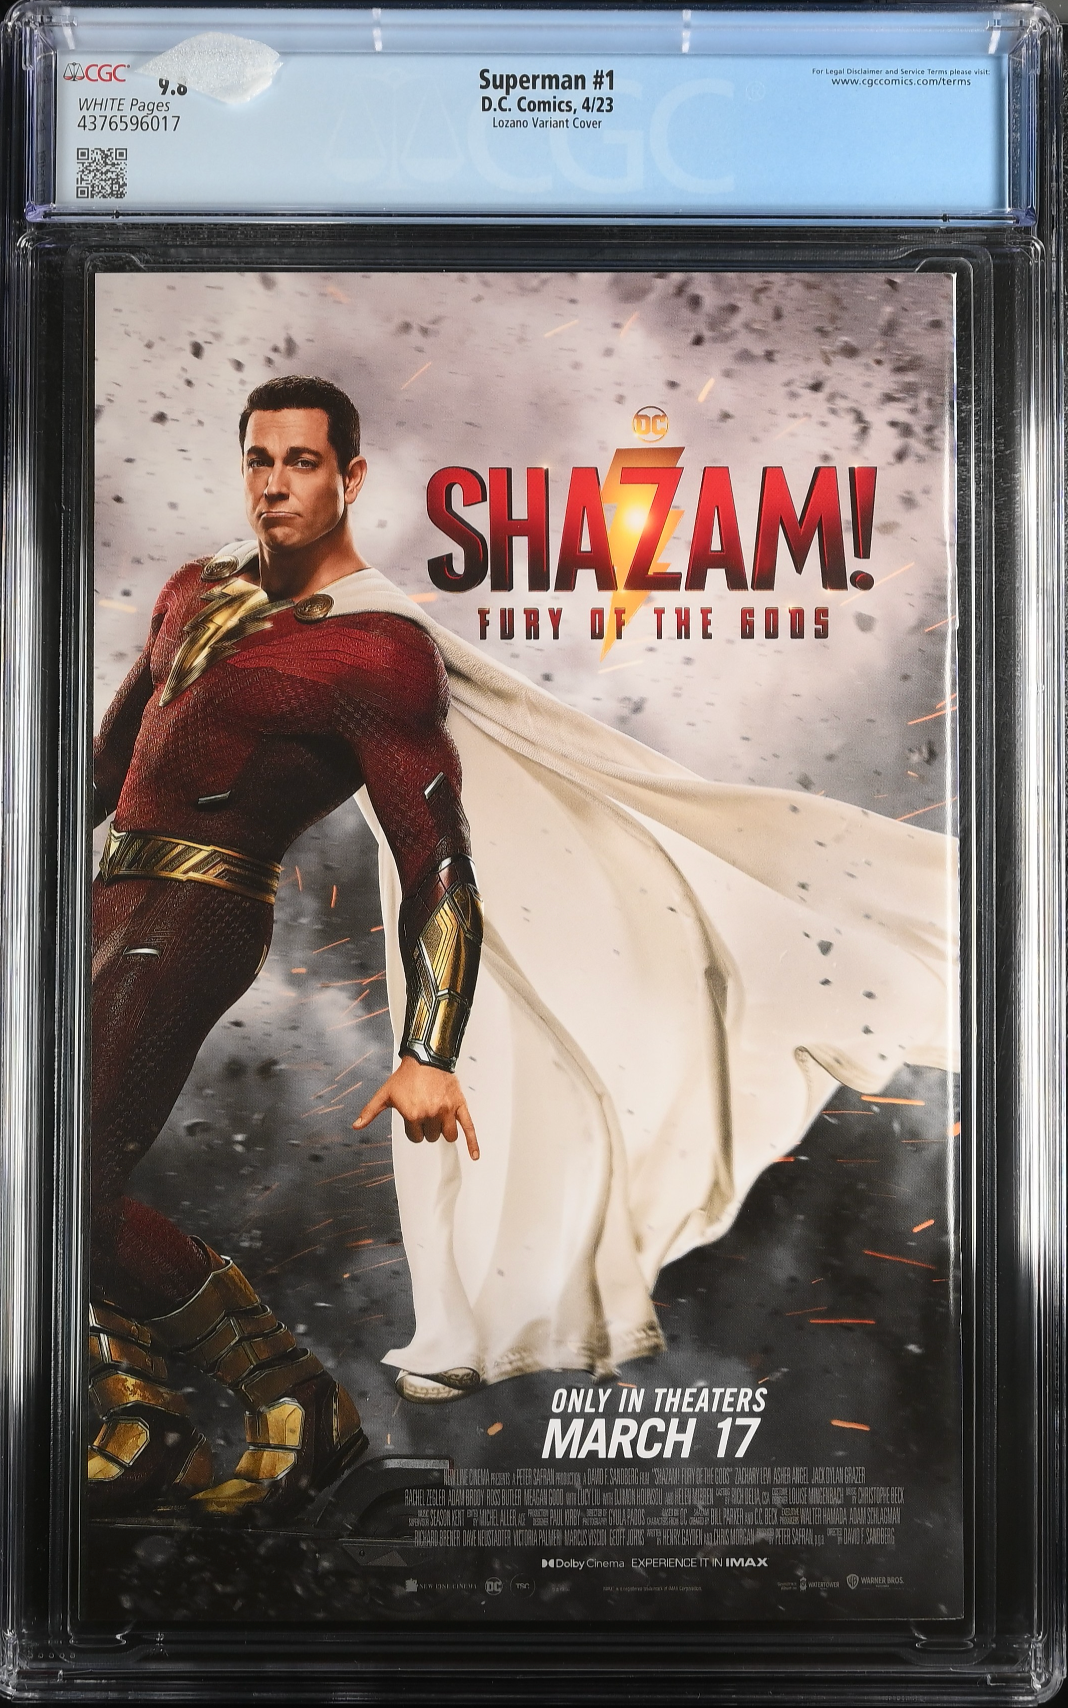 Superman #1 - Cover H - Lozano CGC 9.8